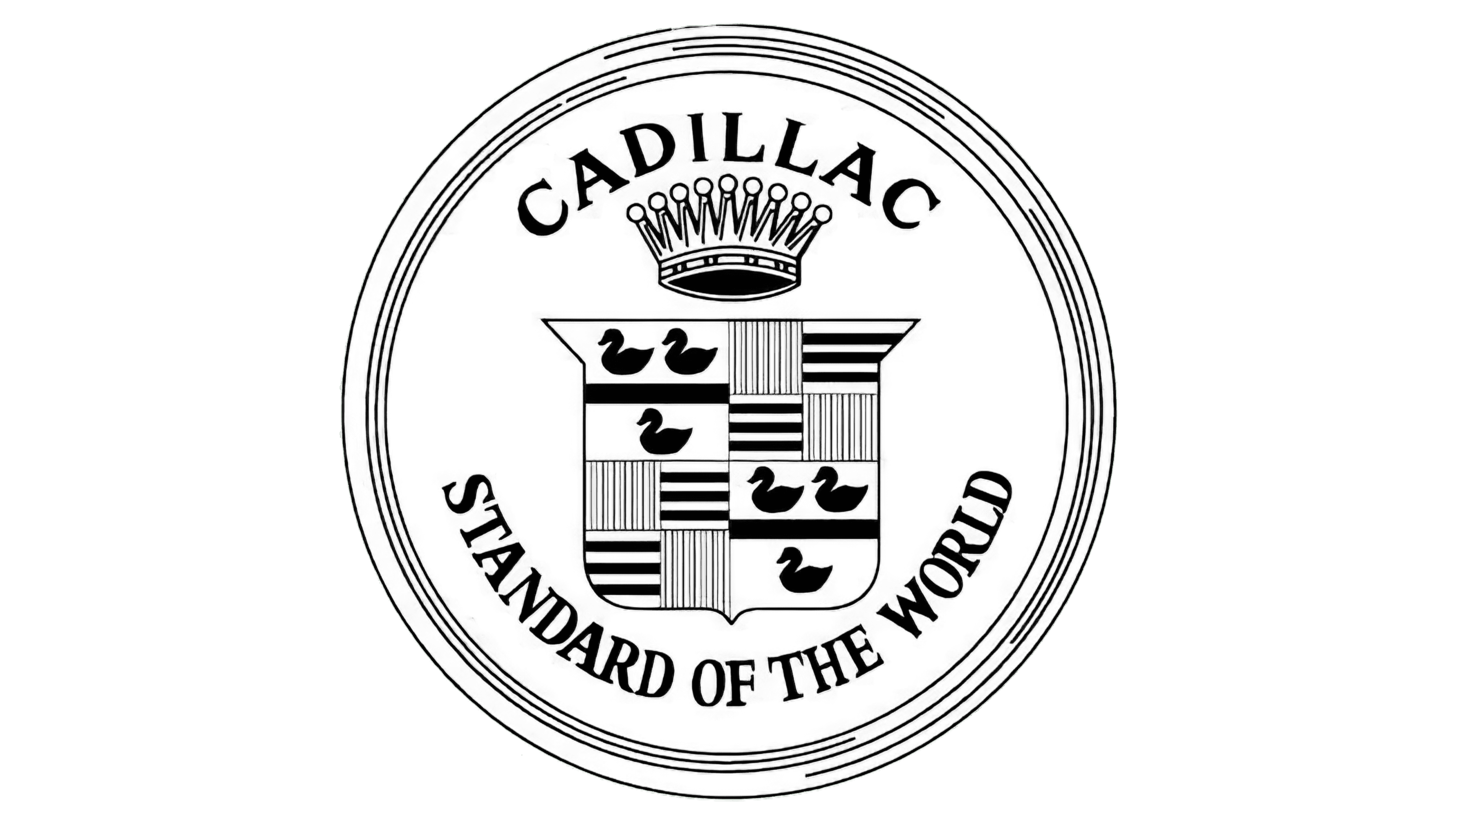 Cadillac sign 1908 1914